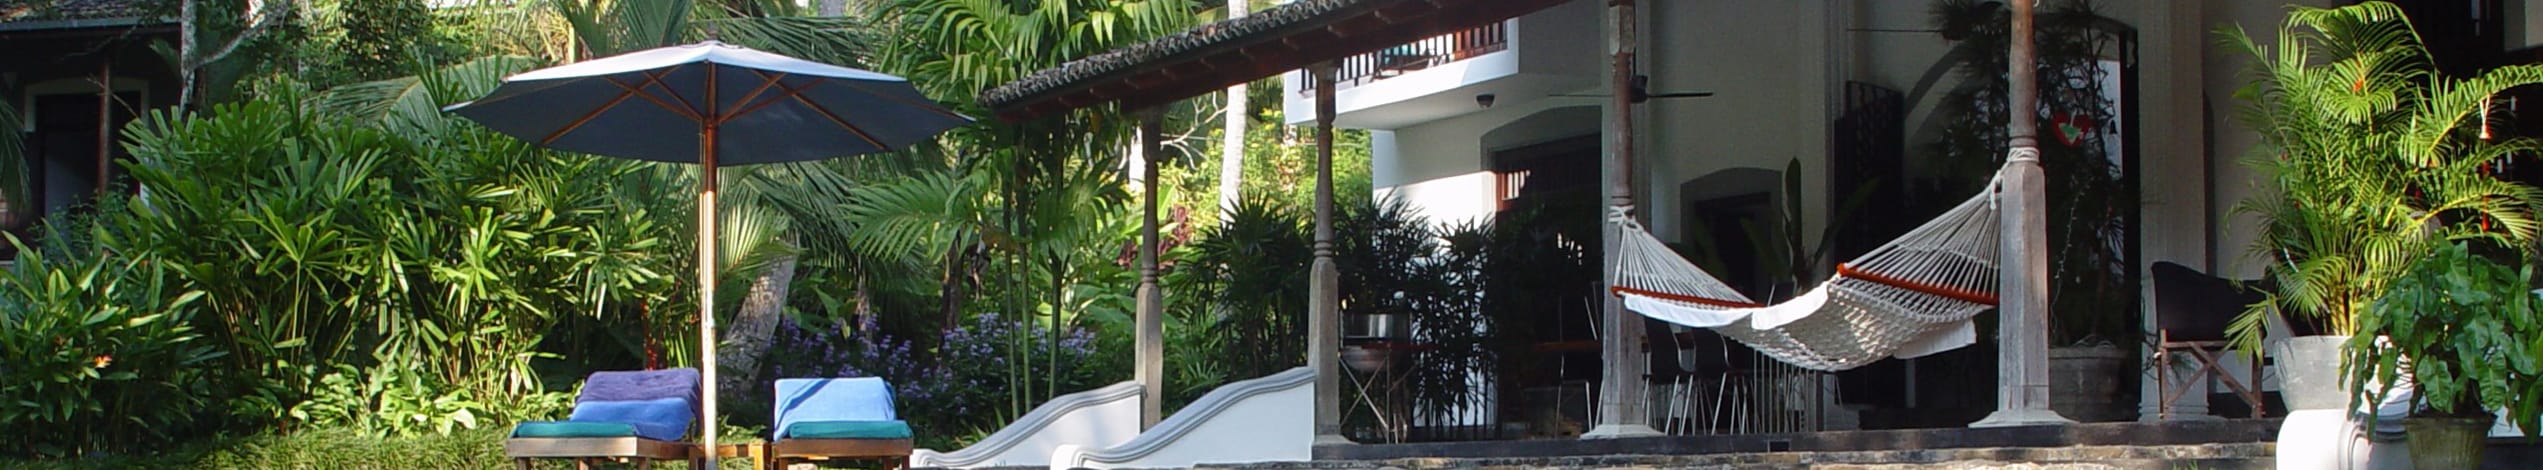 Villa på Sri Lanka